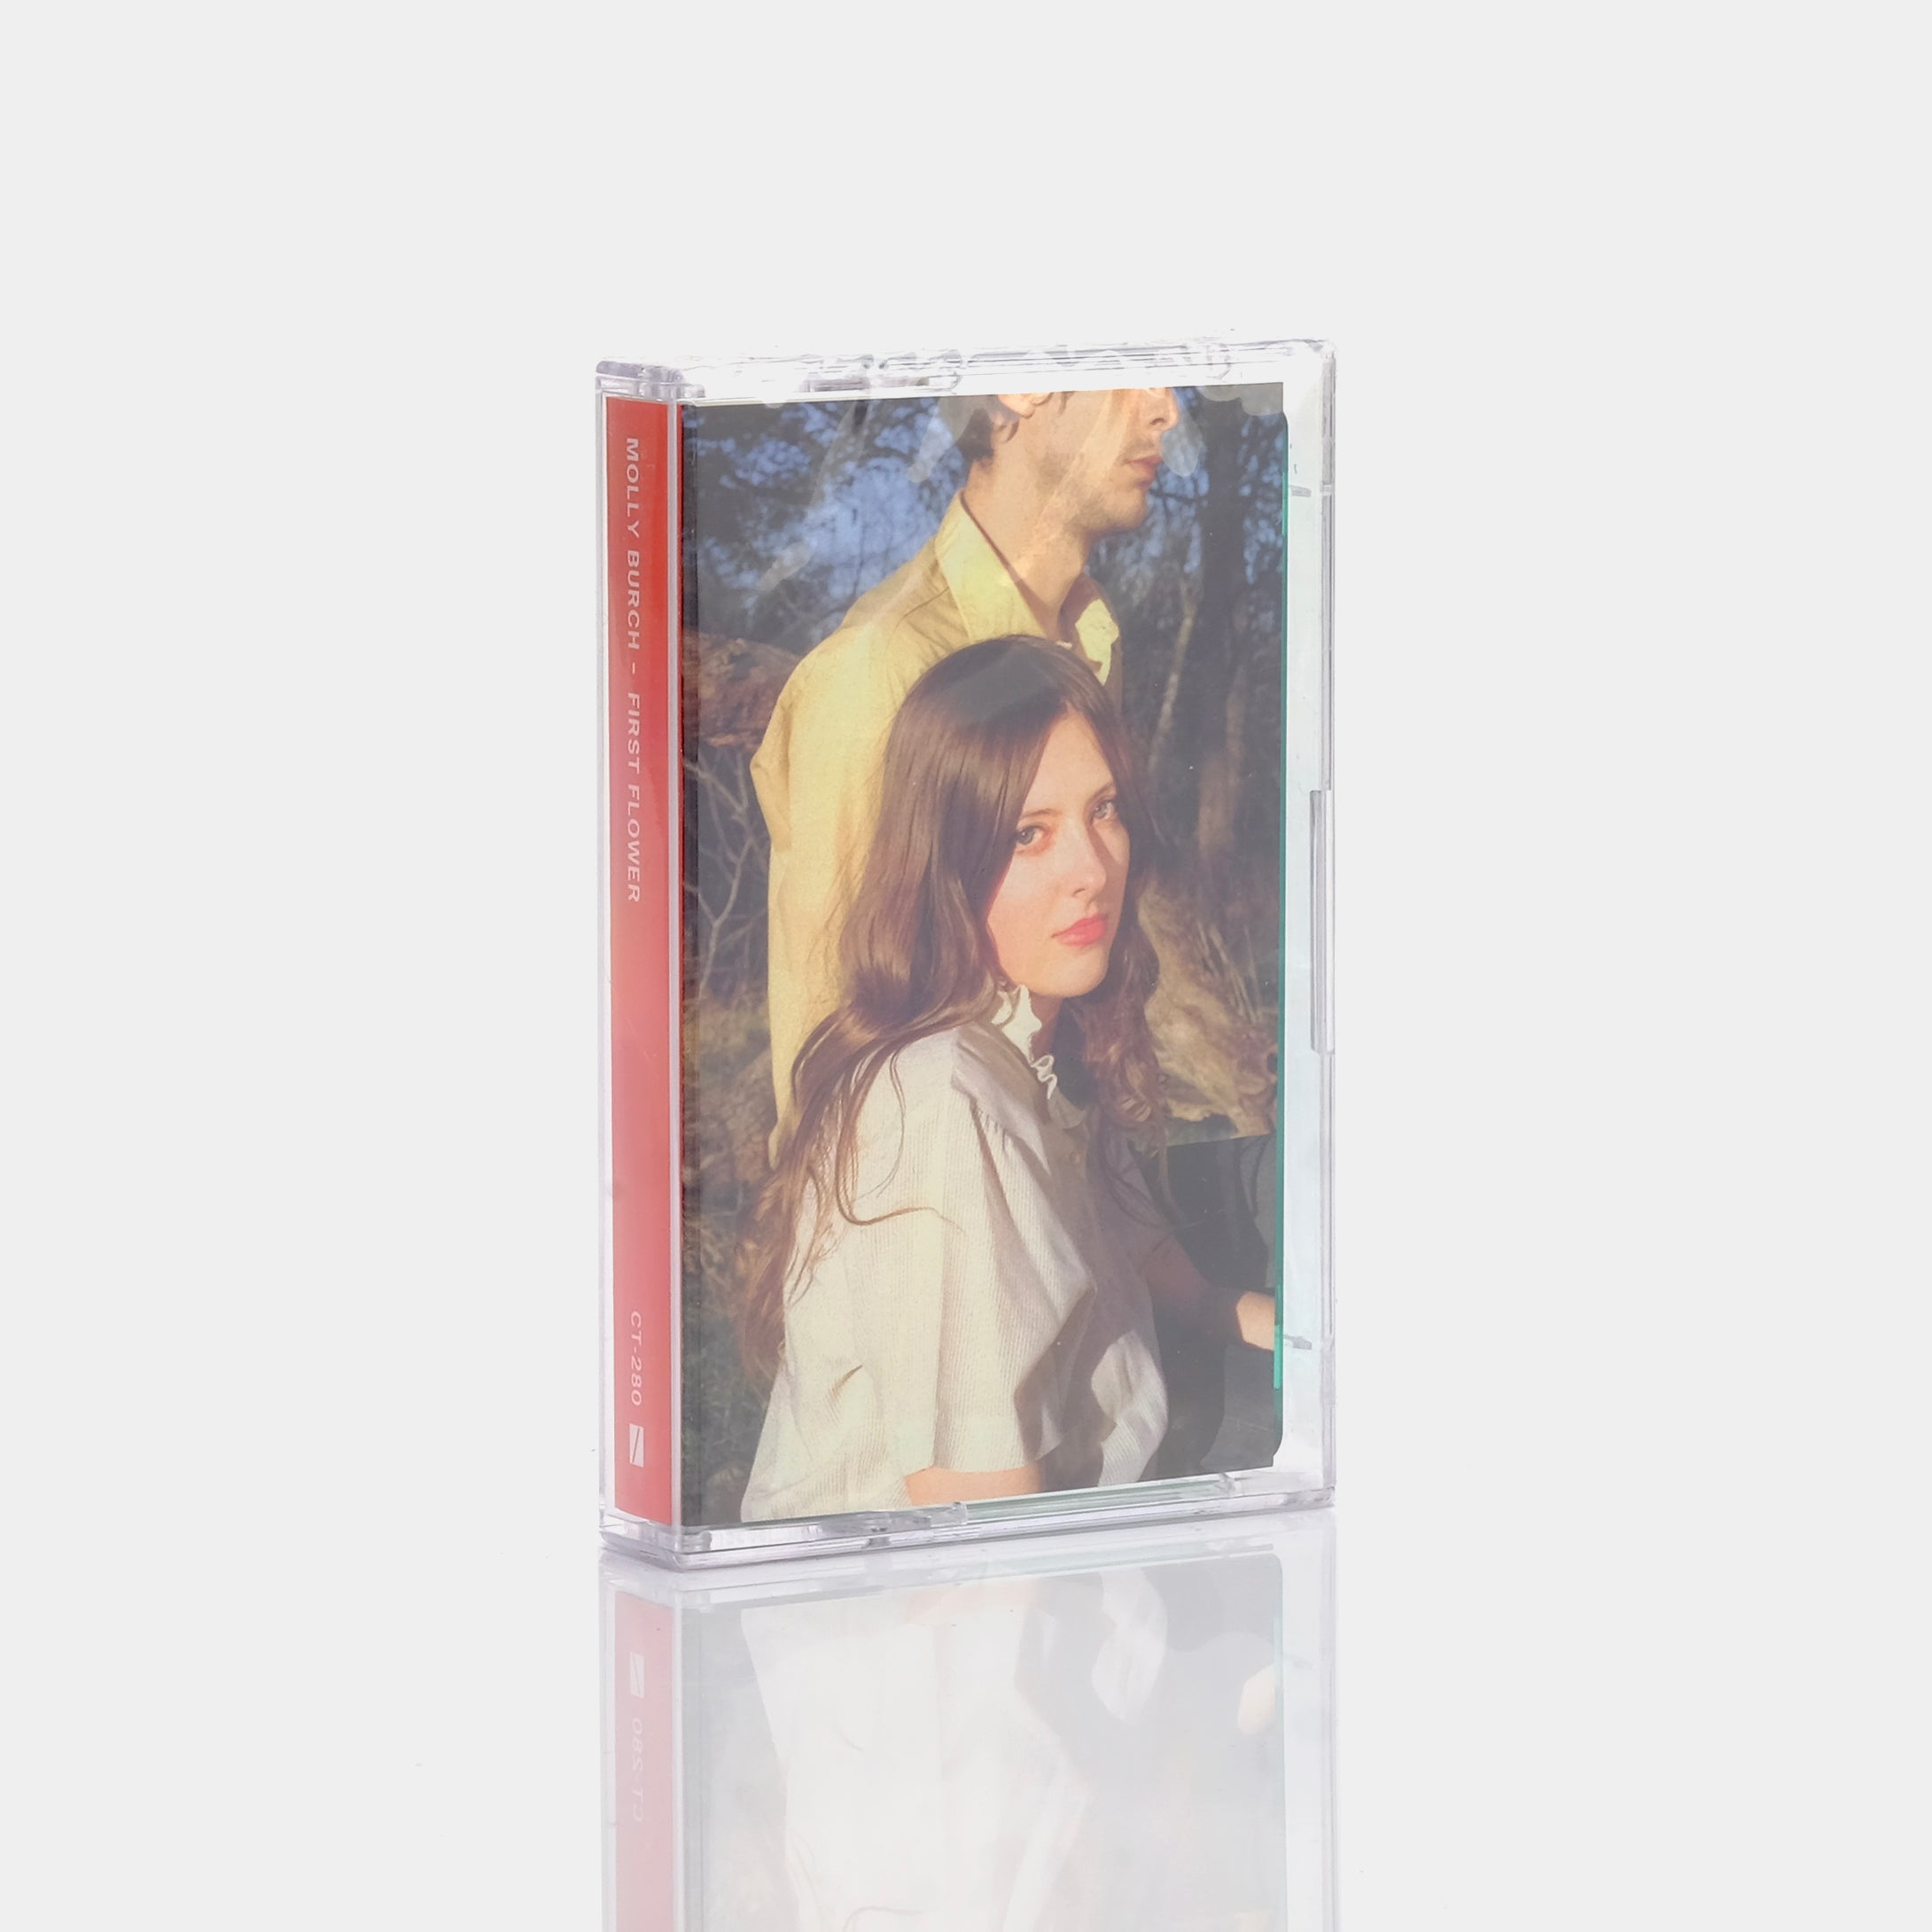 Molly Burch - First Flower Cassette Tape